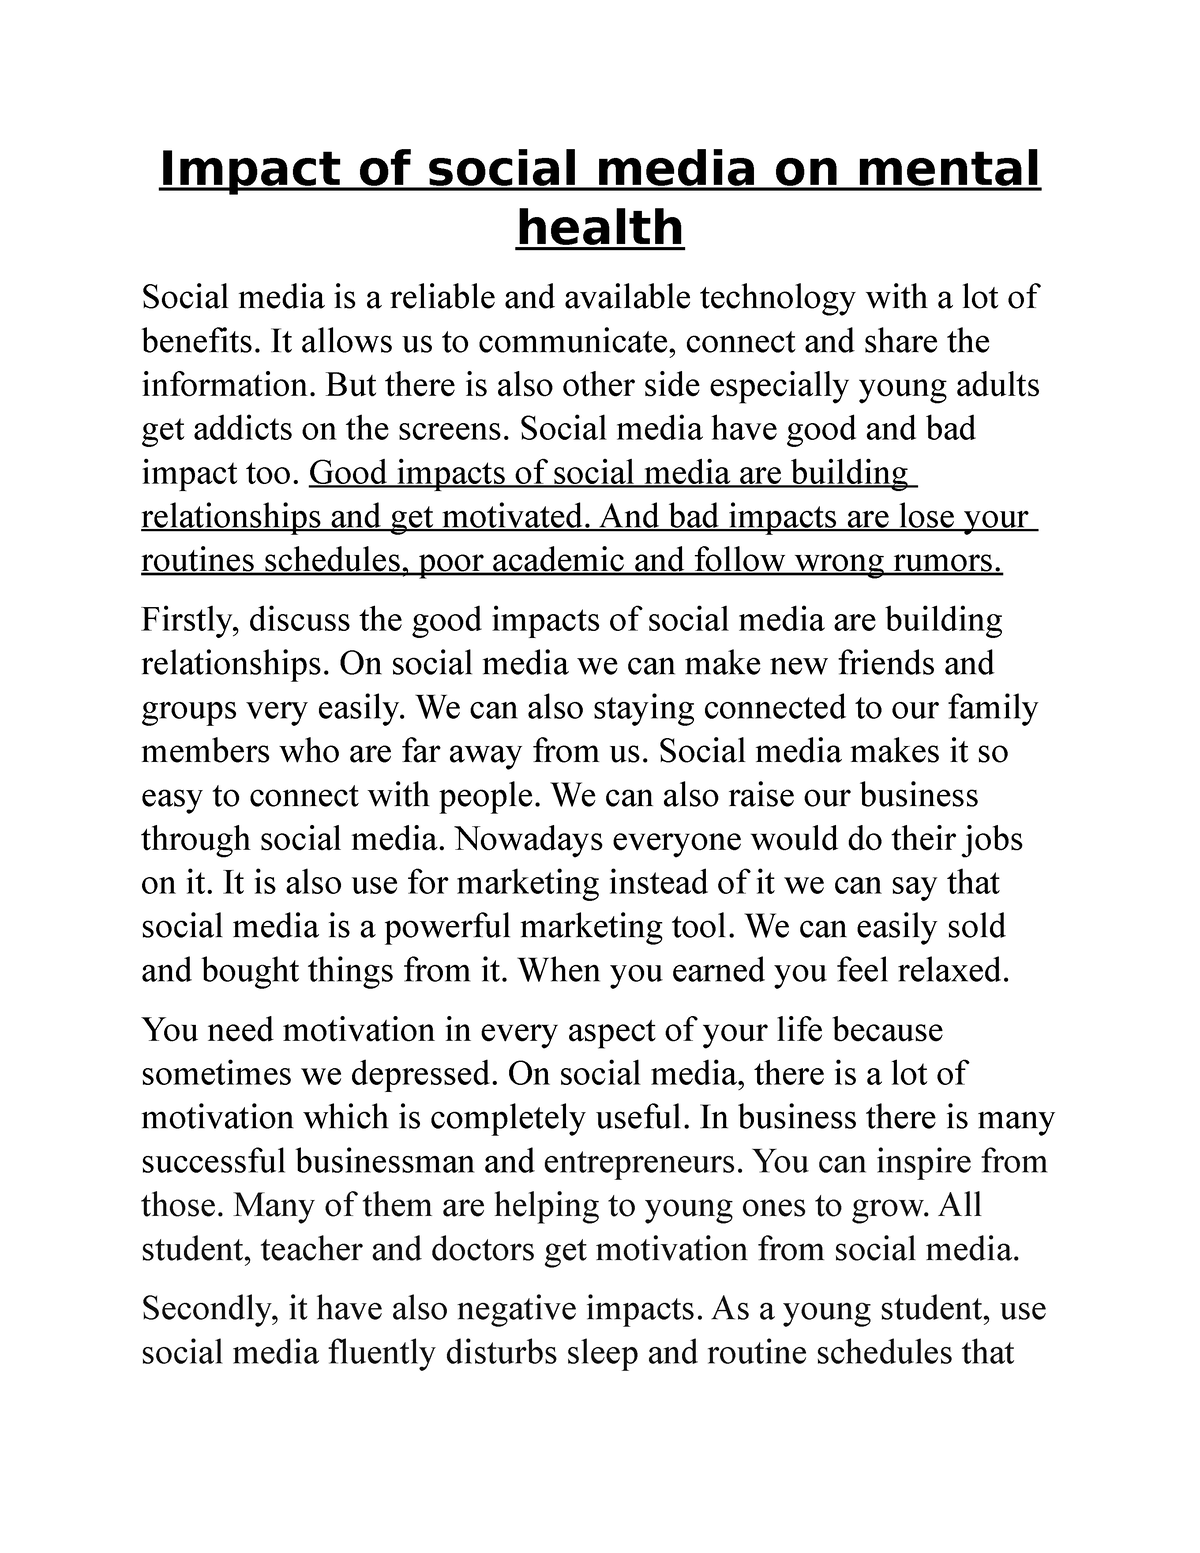 influence of social media on mental health essay